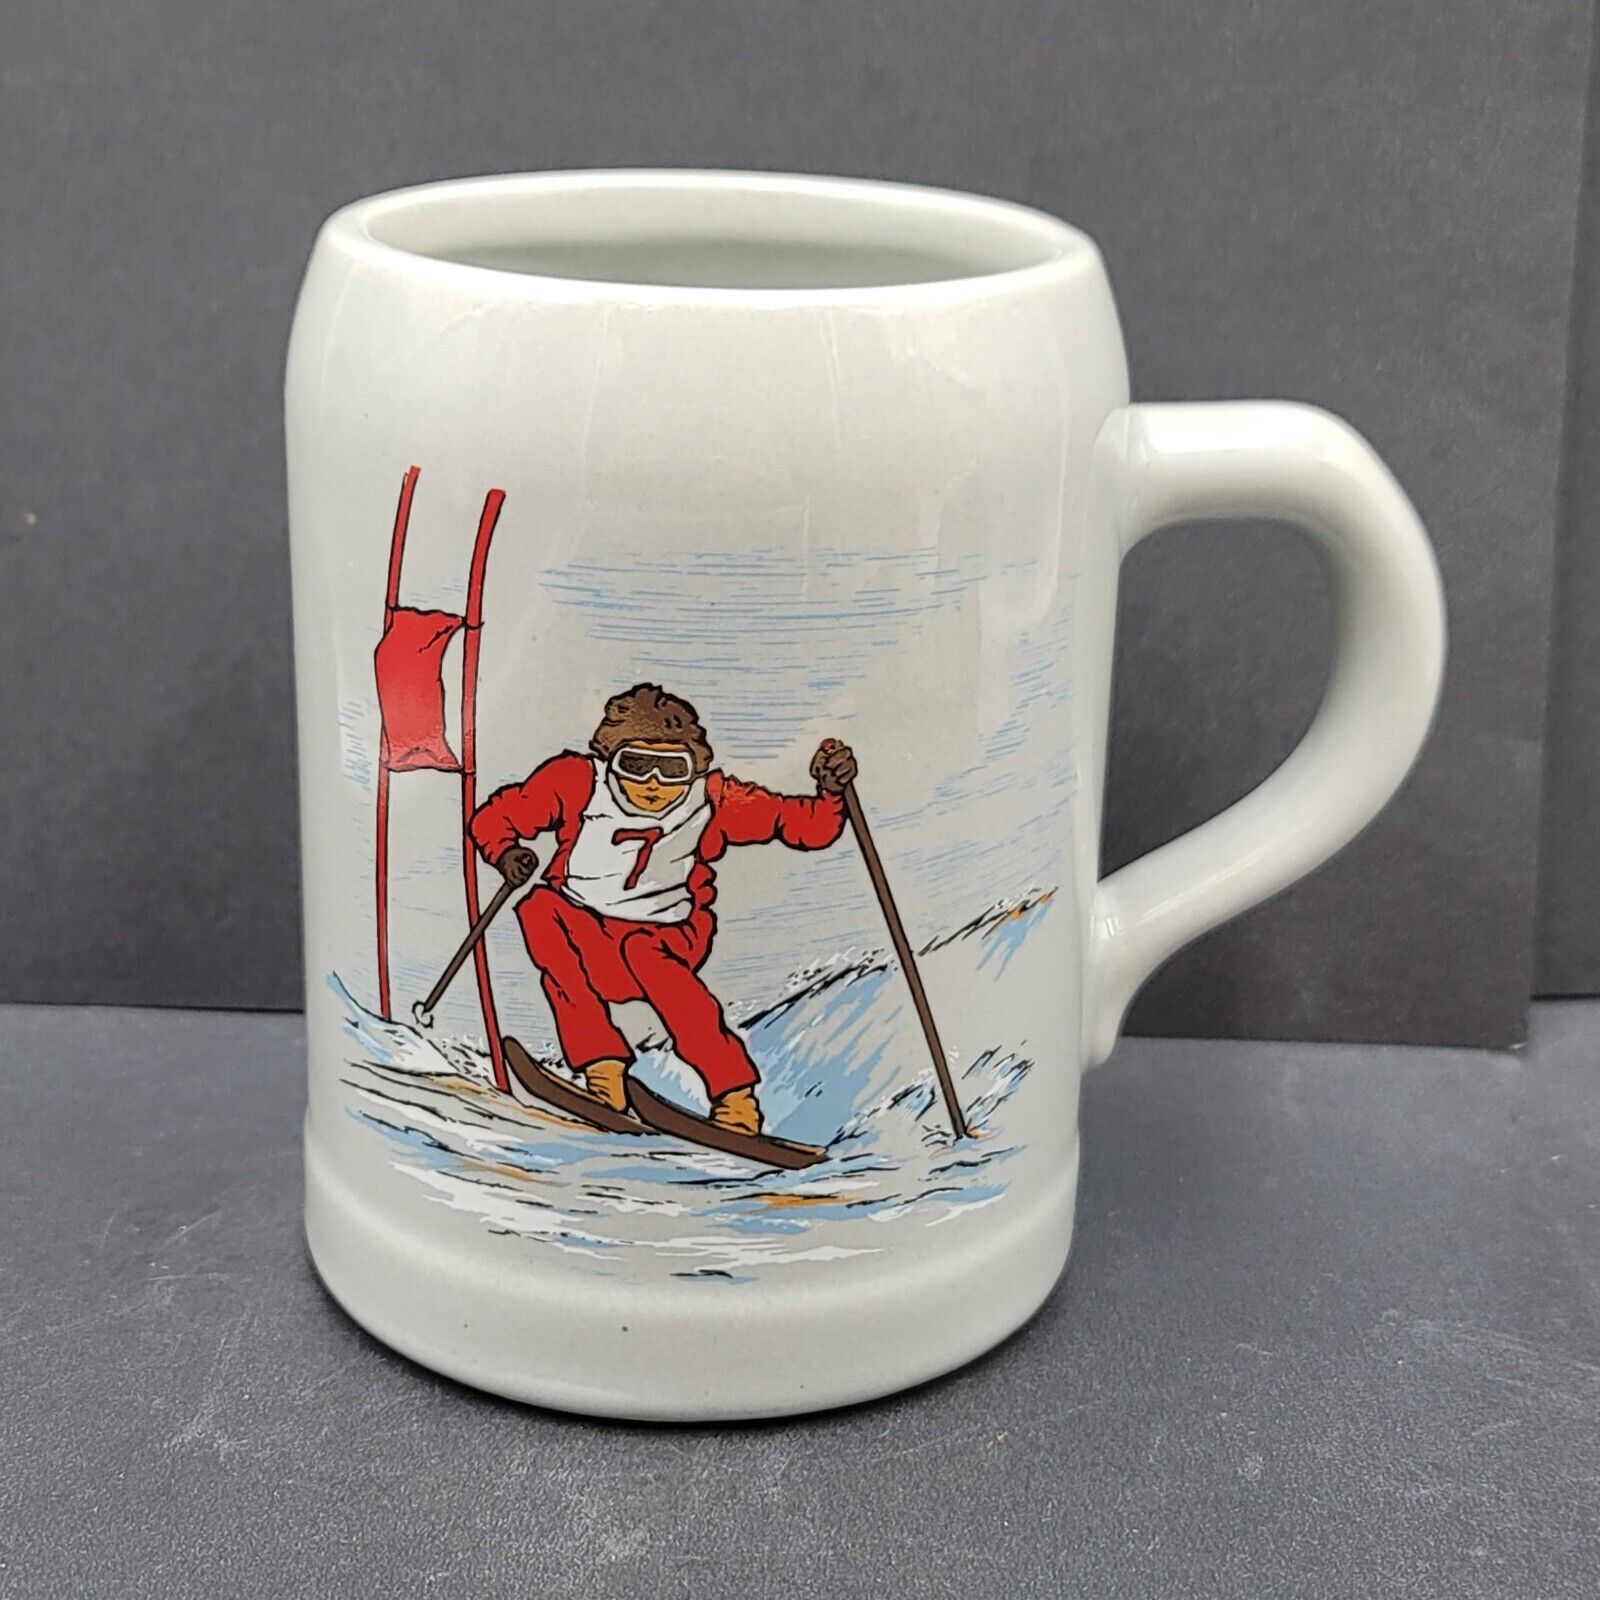 Vintage Breckenridge Coffee Mug Colorado Ski Resort Memorabilia Souvenir